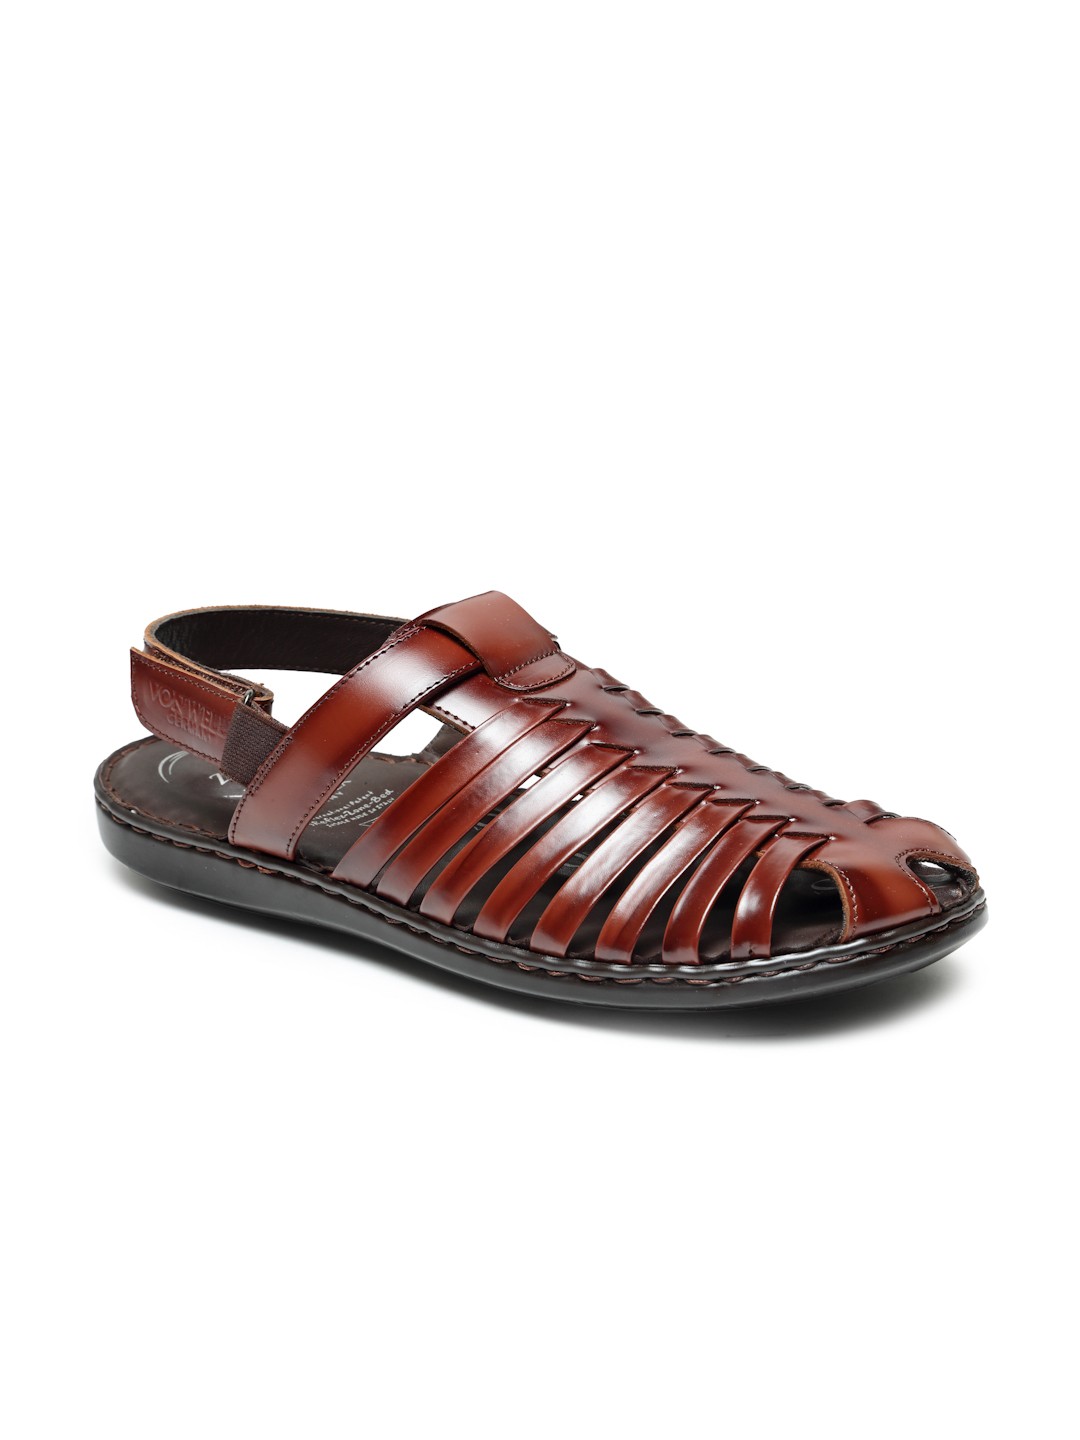 Buy Von Wellx Germany Comfort Men's Multi Sandals Volker Online in Jeddah